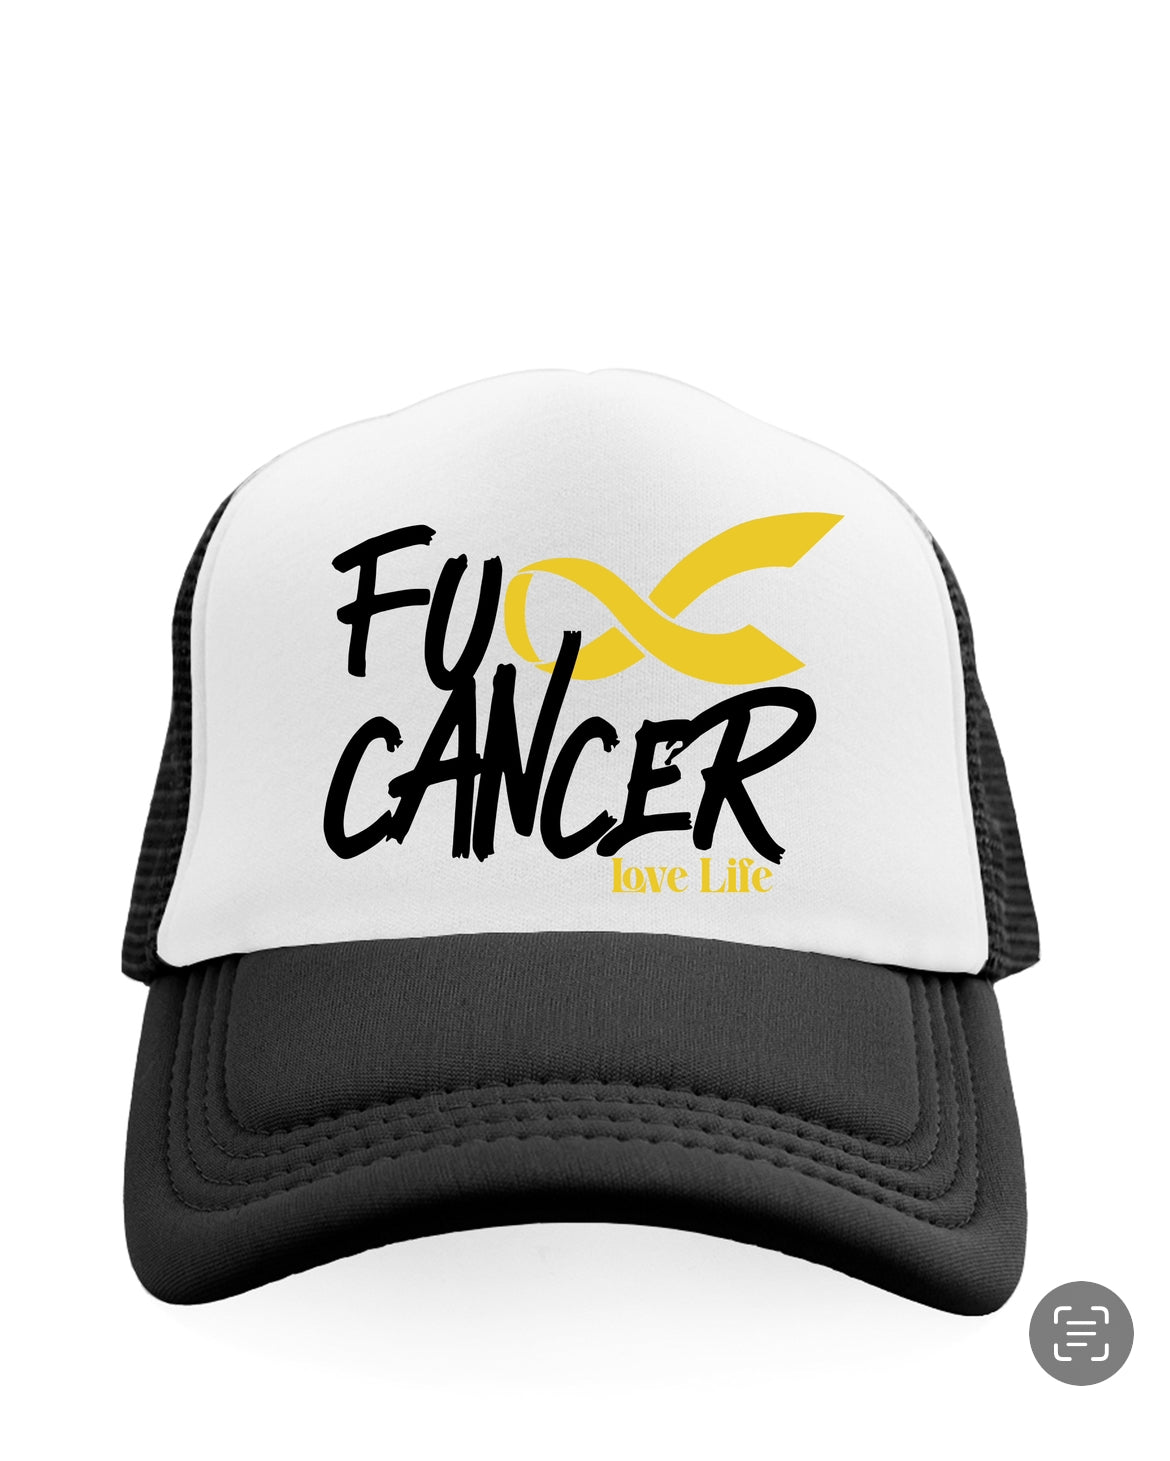 Fu*k Cancer hat